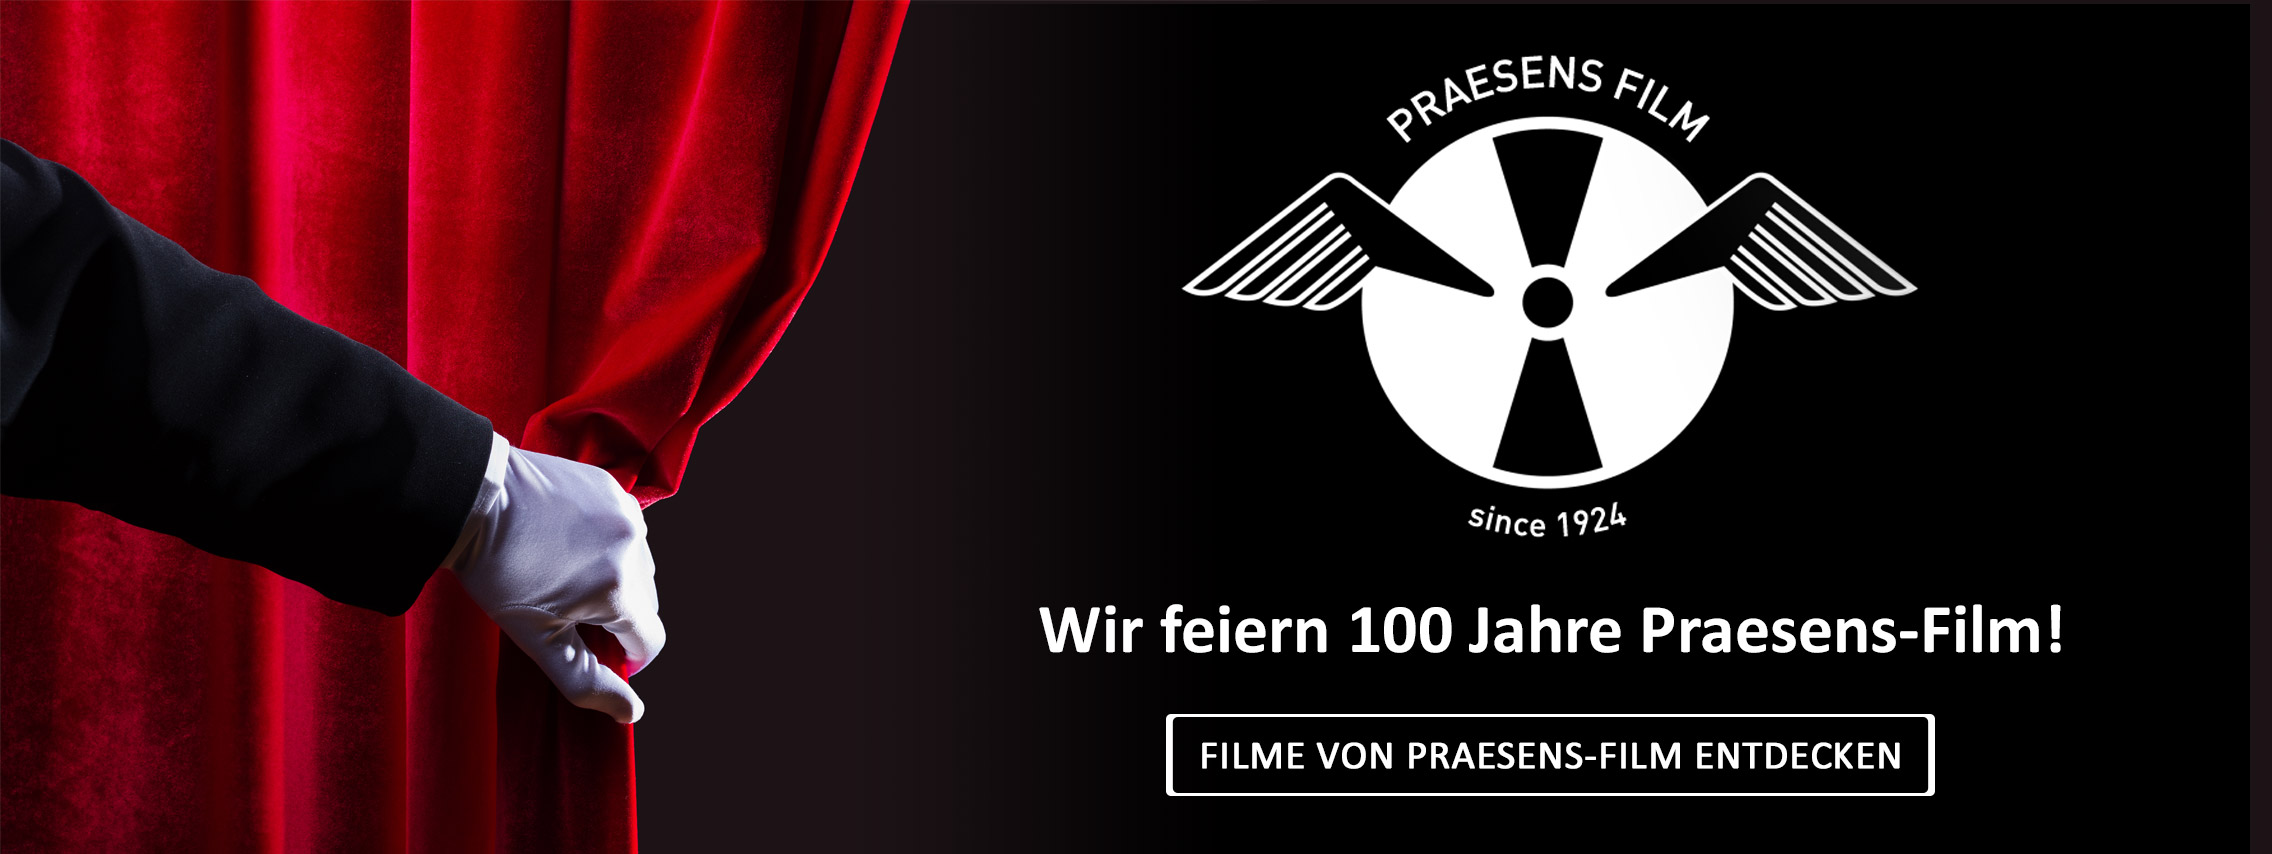 100 Jahre Praesens-Film